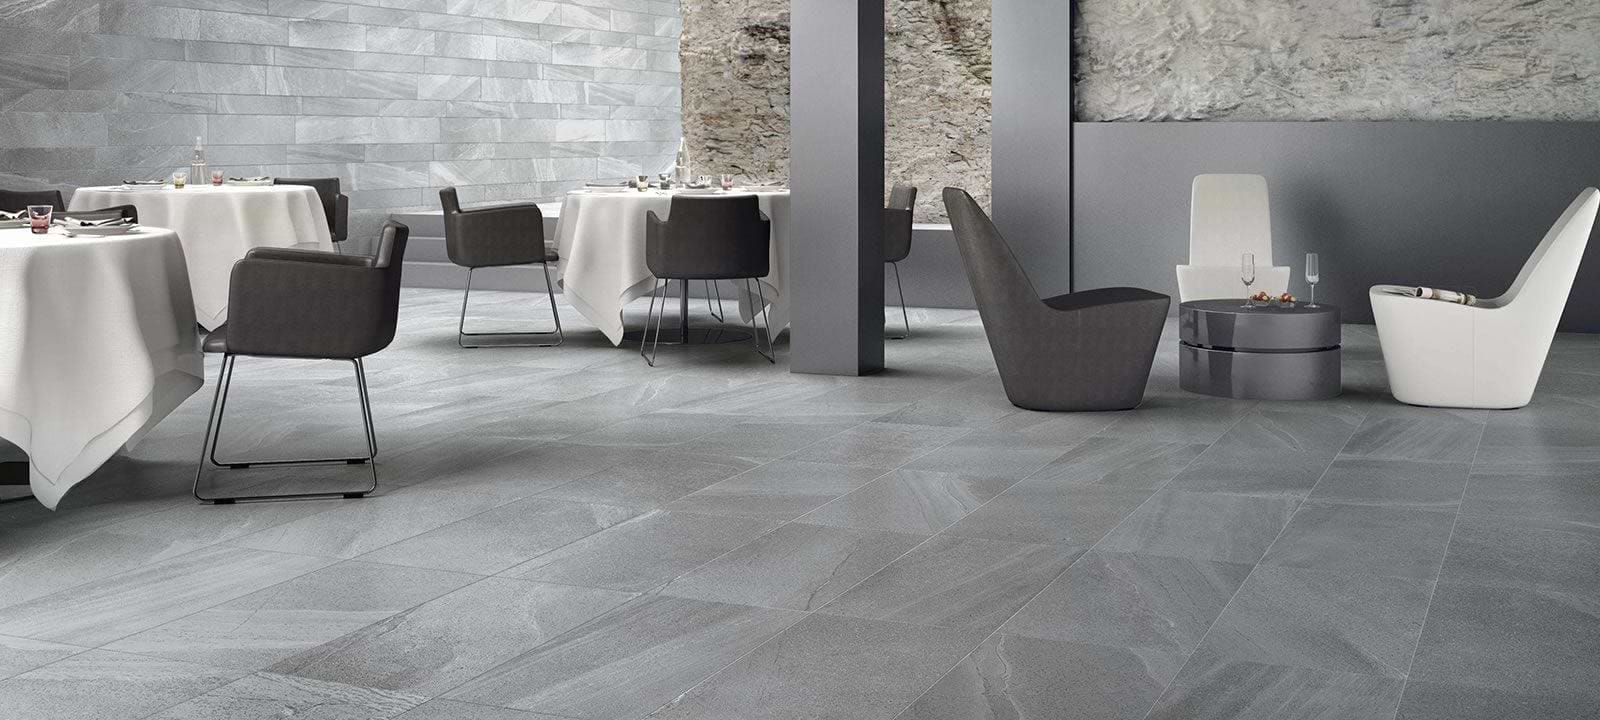 Minoli Wall & Floor Tiles Lakestone Grey Matt